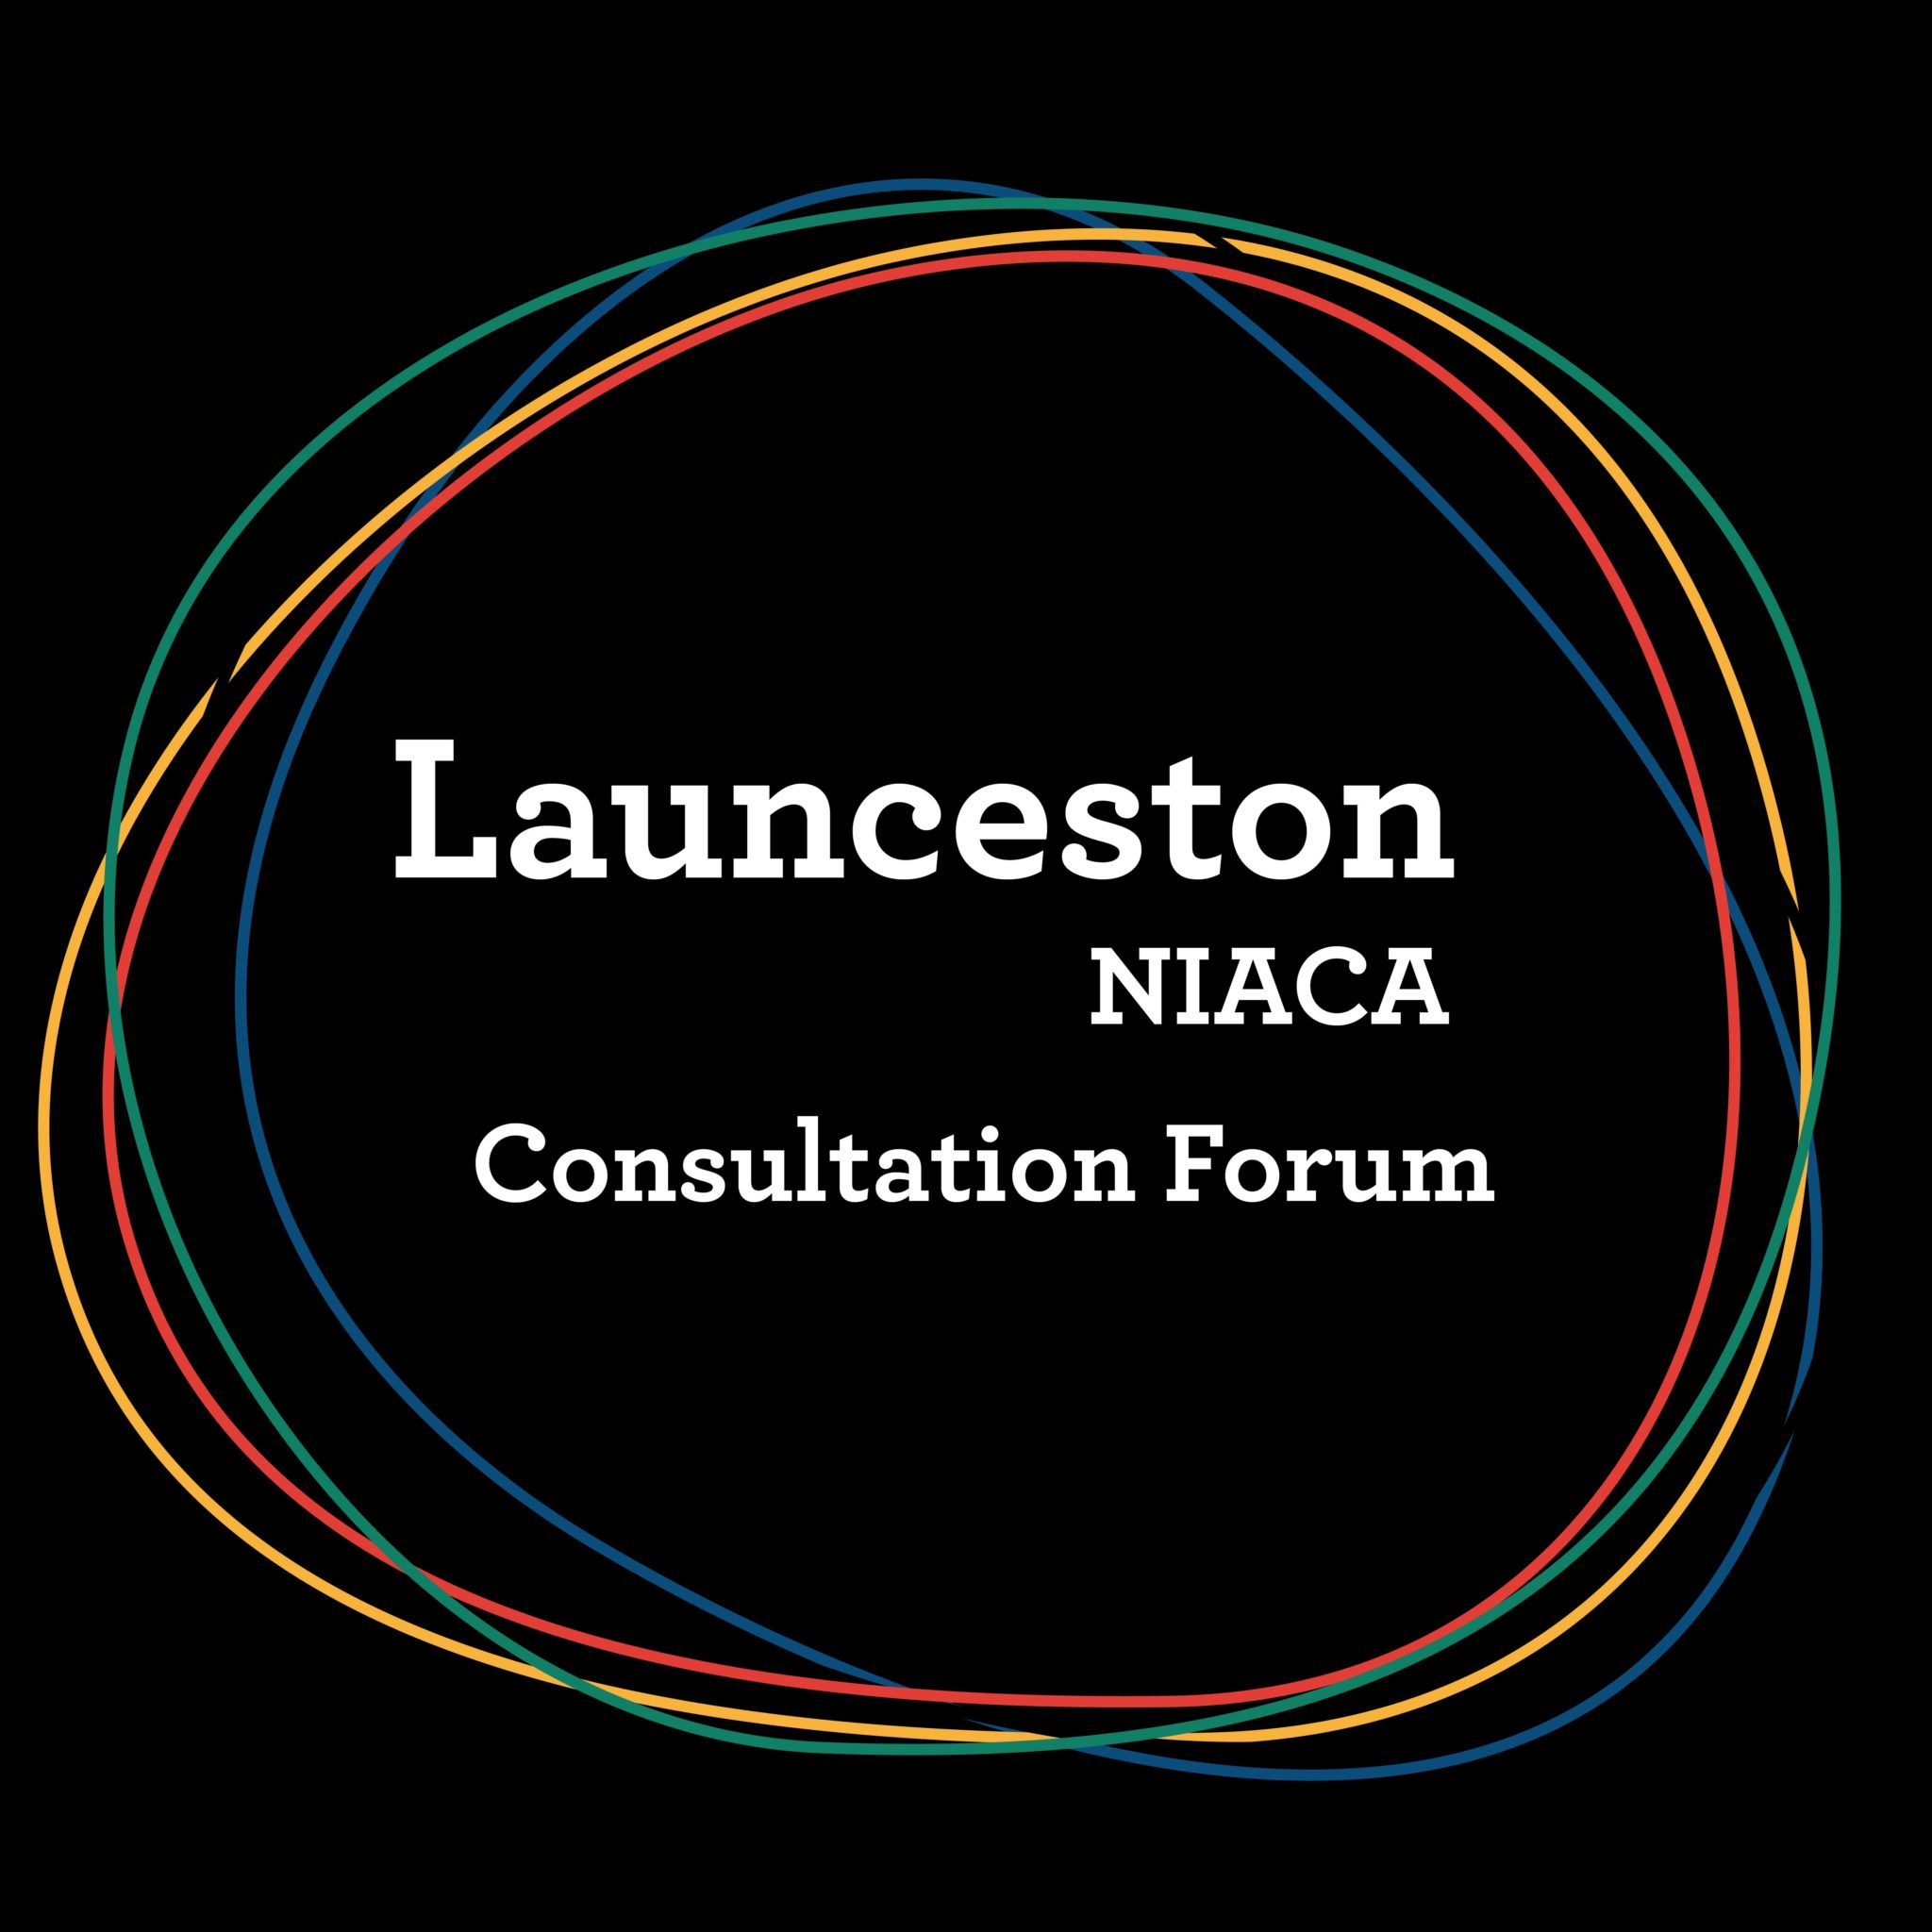 Launceston NIACA Consultation Forum